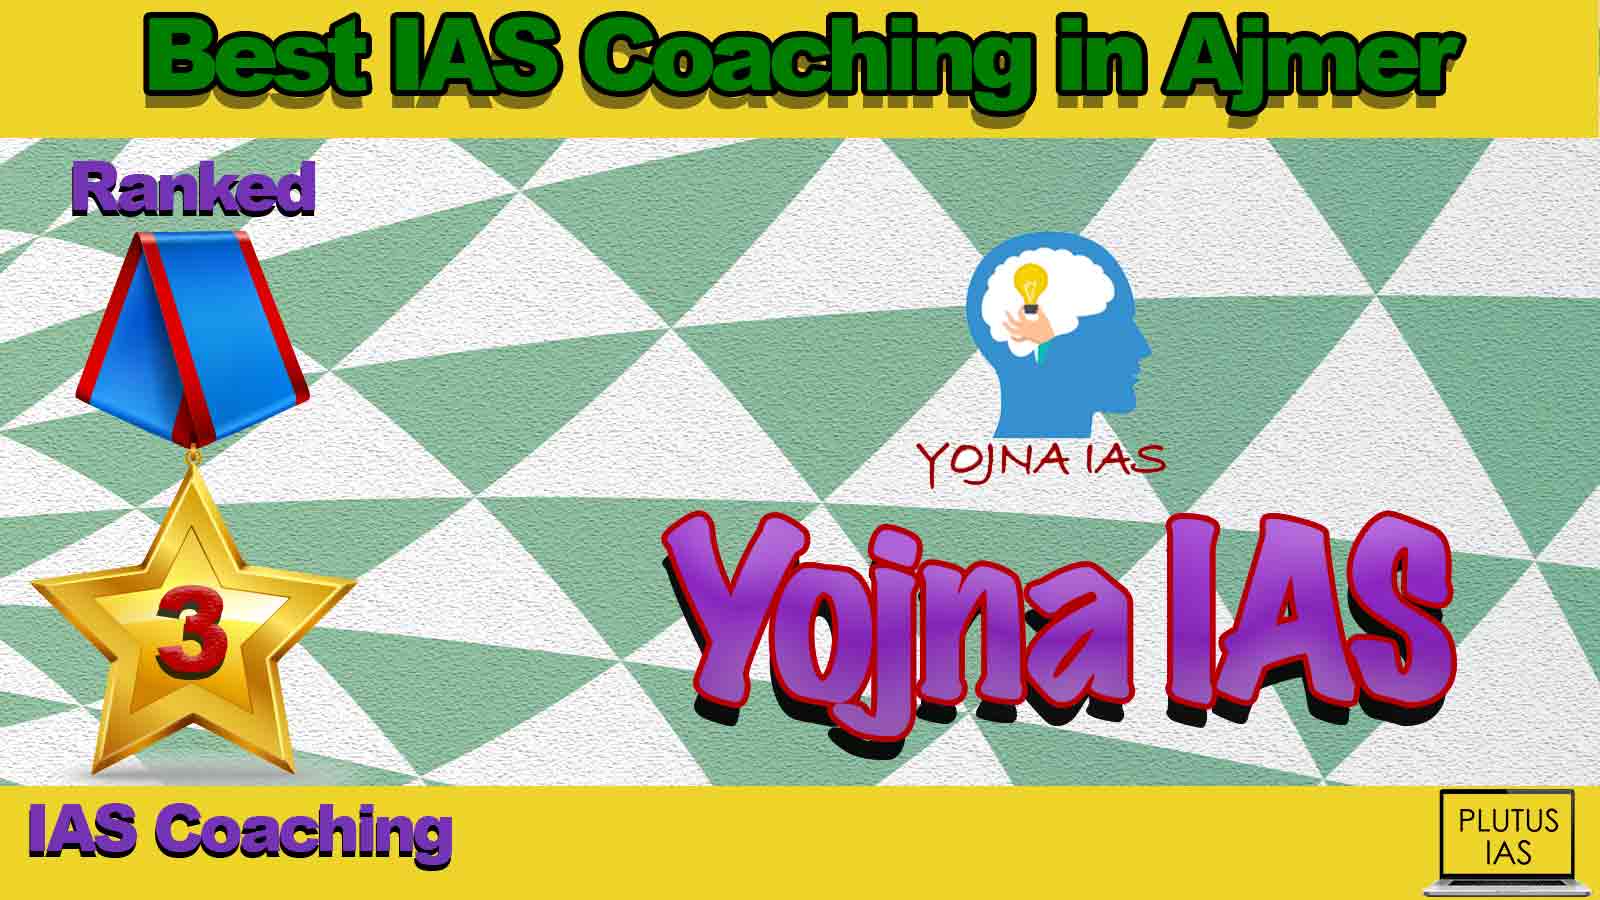 Top IAS Coaching in Ajmer